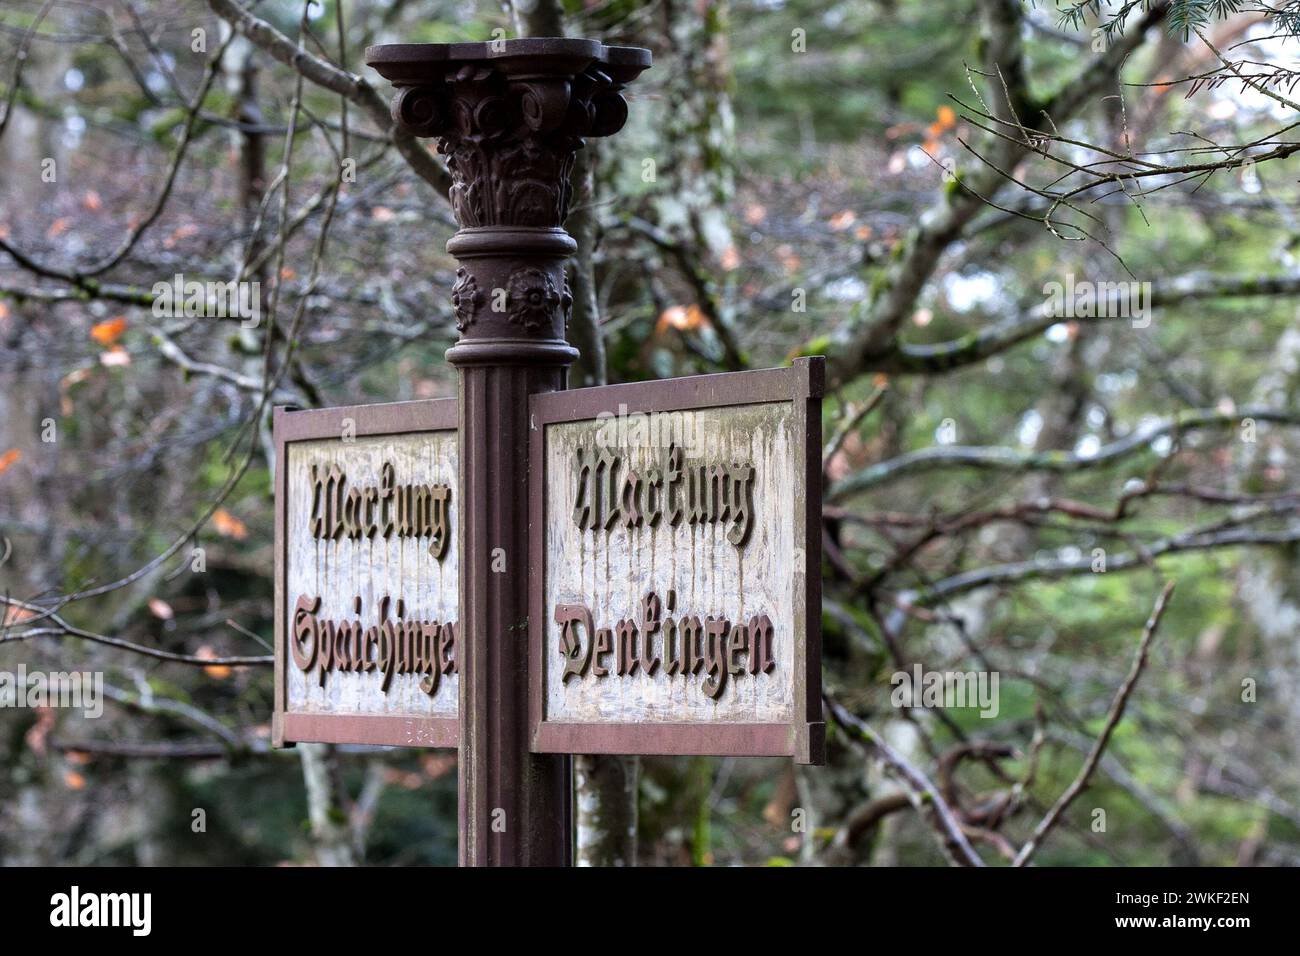 Un vecchio cartello in ghisa lungo il sentiero indica "Markung Spaichingen" e "Markung Denkingen". E' resistente agli agenti atmosferici, ma leggibile. Foto Stock